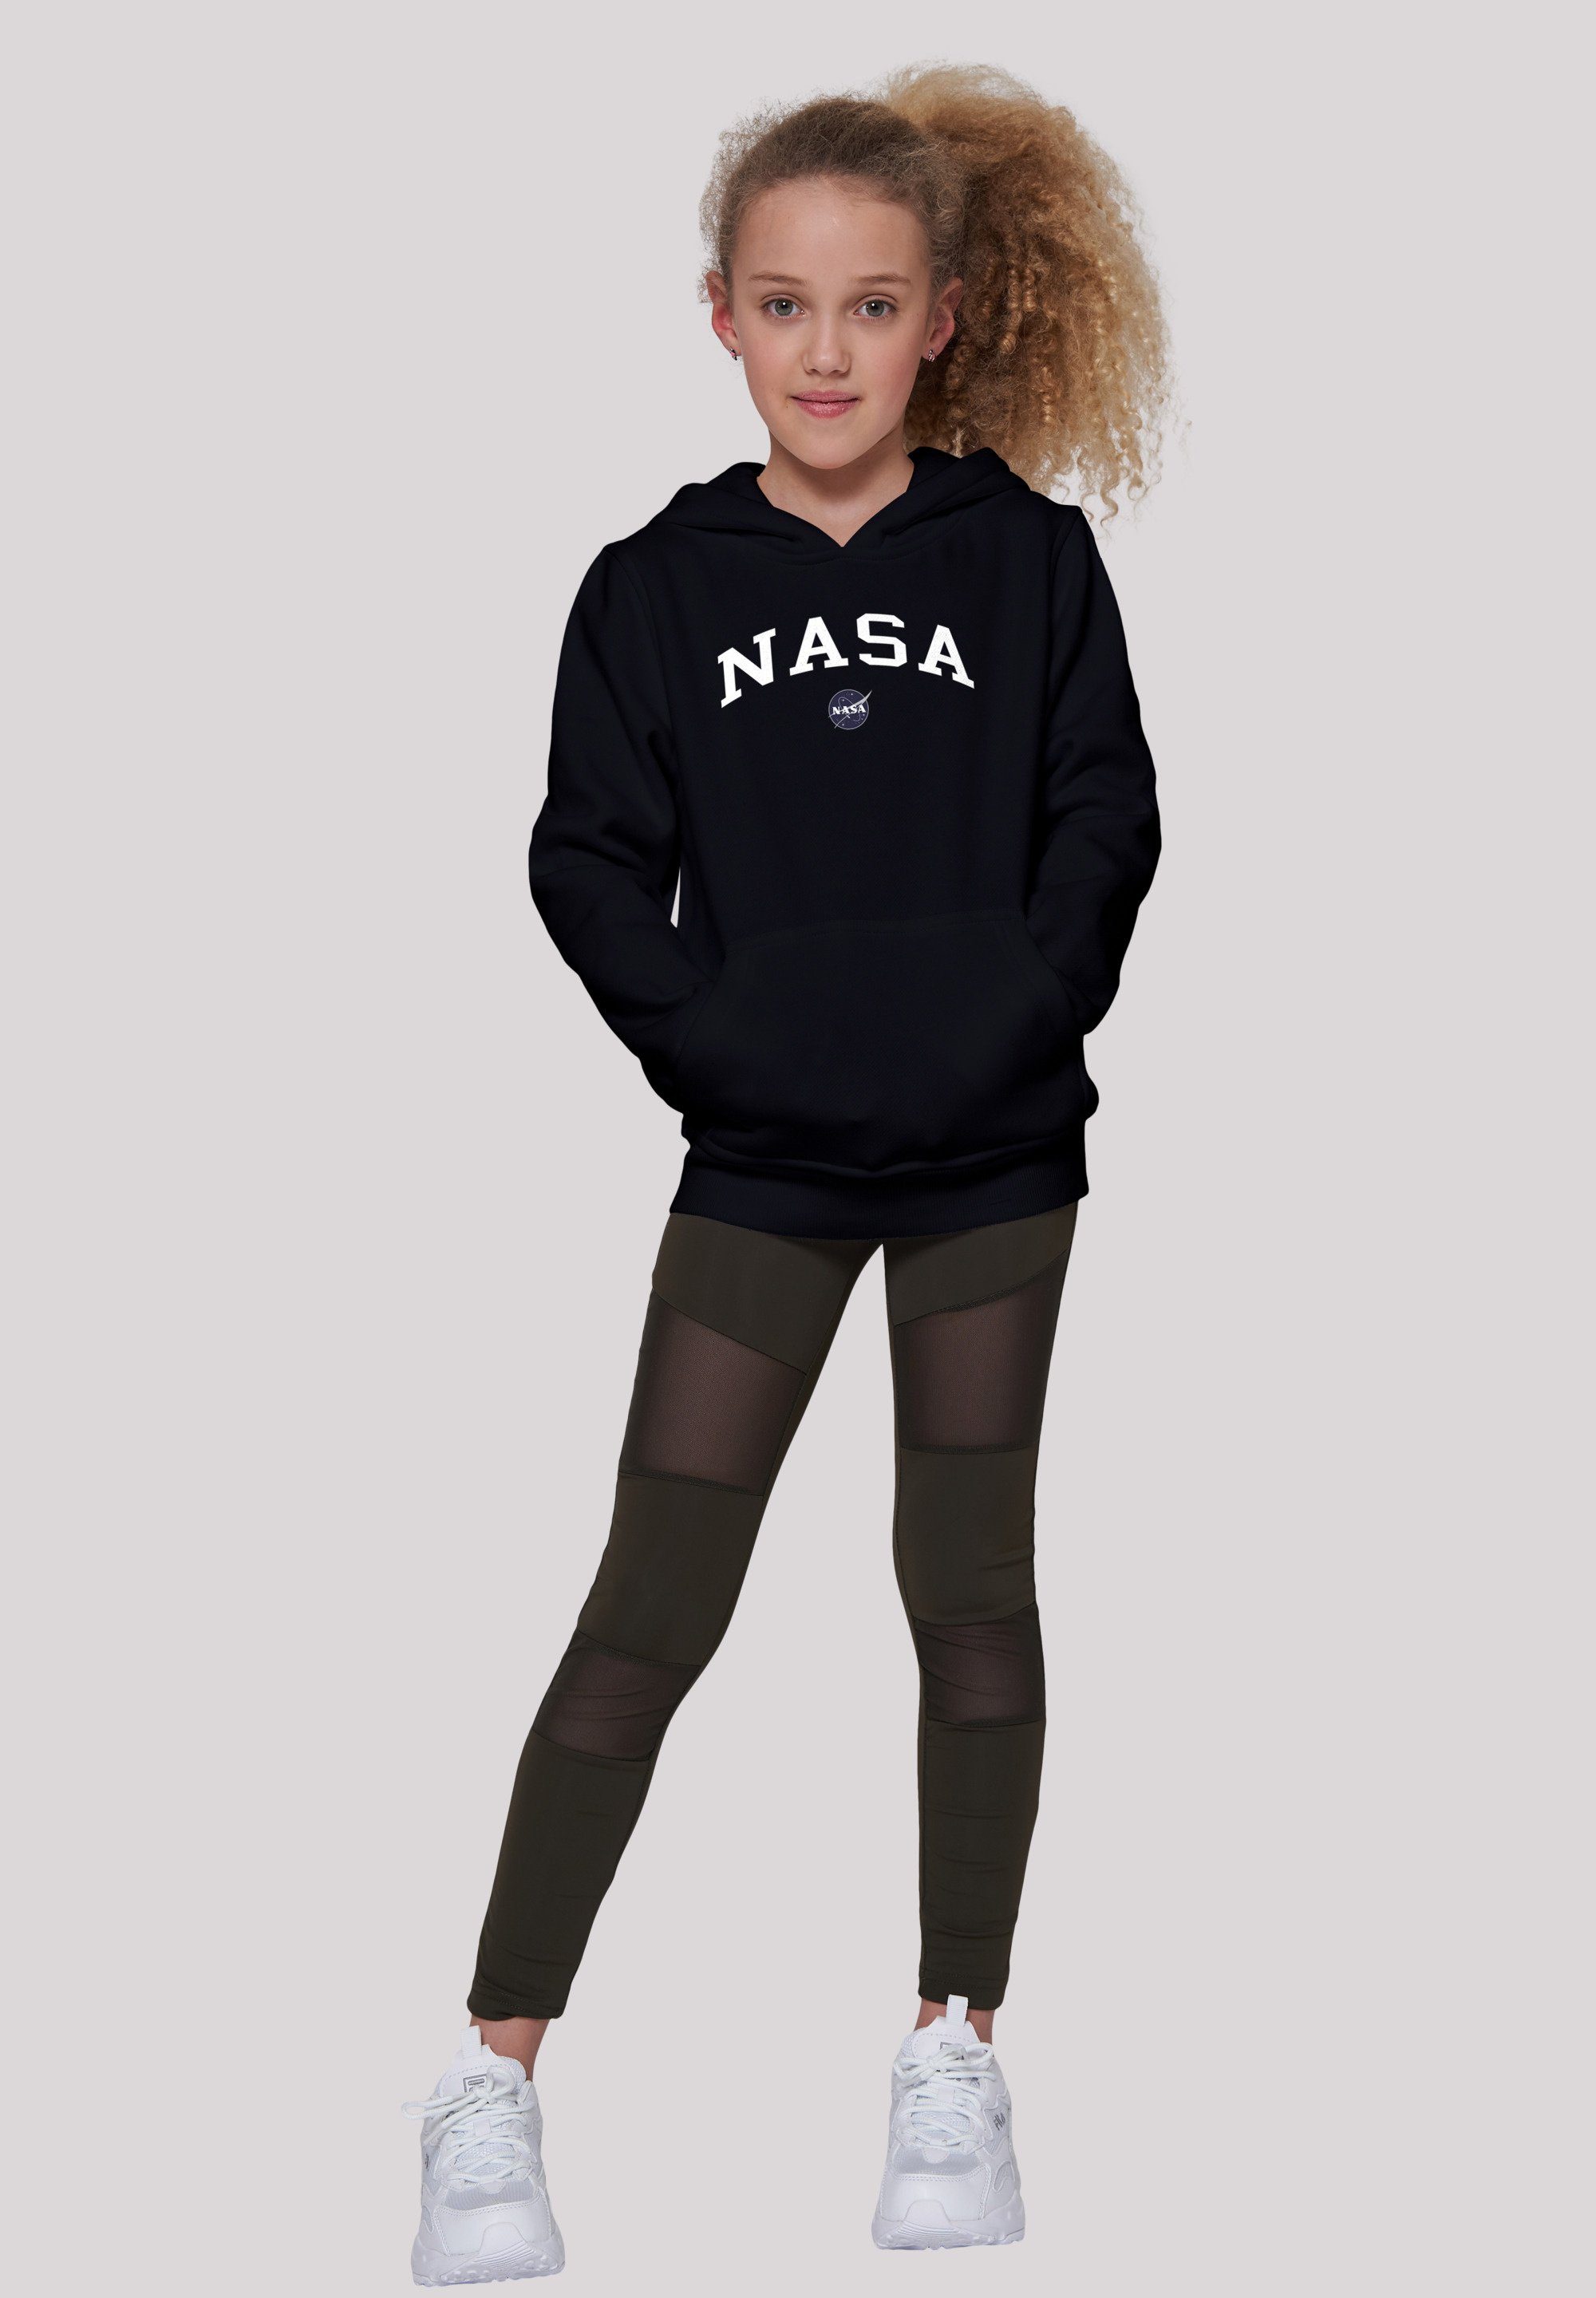 Sweatshirt Logo Kinder,Premium Unisex F4NT4STIC Merch,Jungen,Mädchen,Bedruckt NASA Collegiate